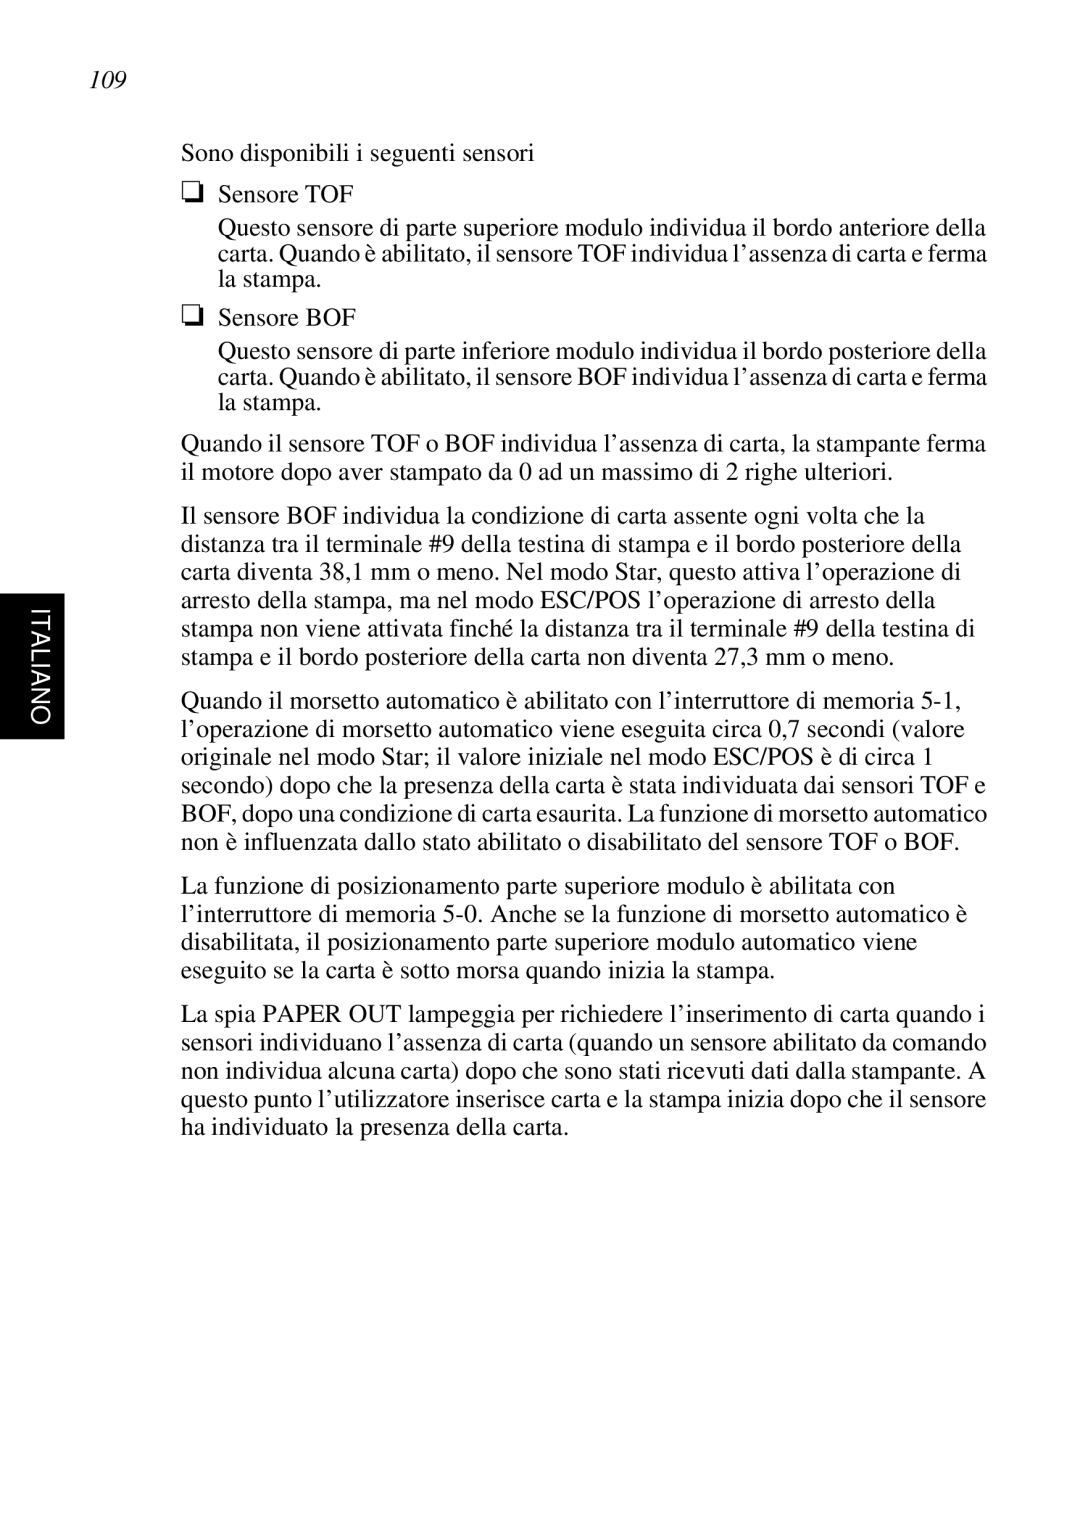 Star Micronics SP298 user manual Italiano, Sono disponibili i seguenti sensori Sensore TOF 